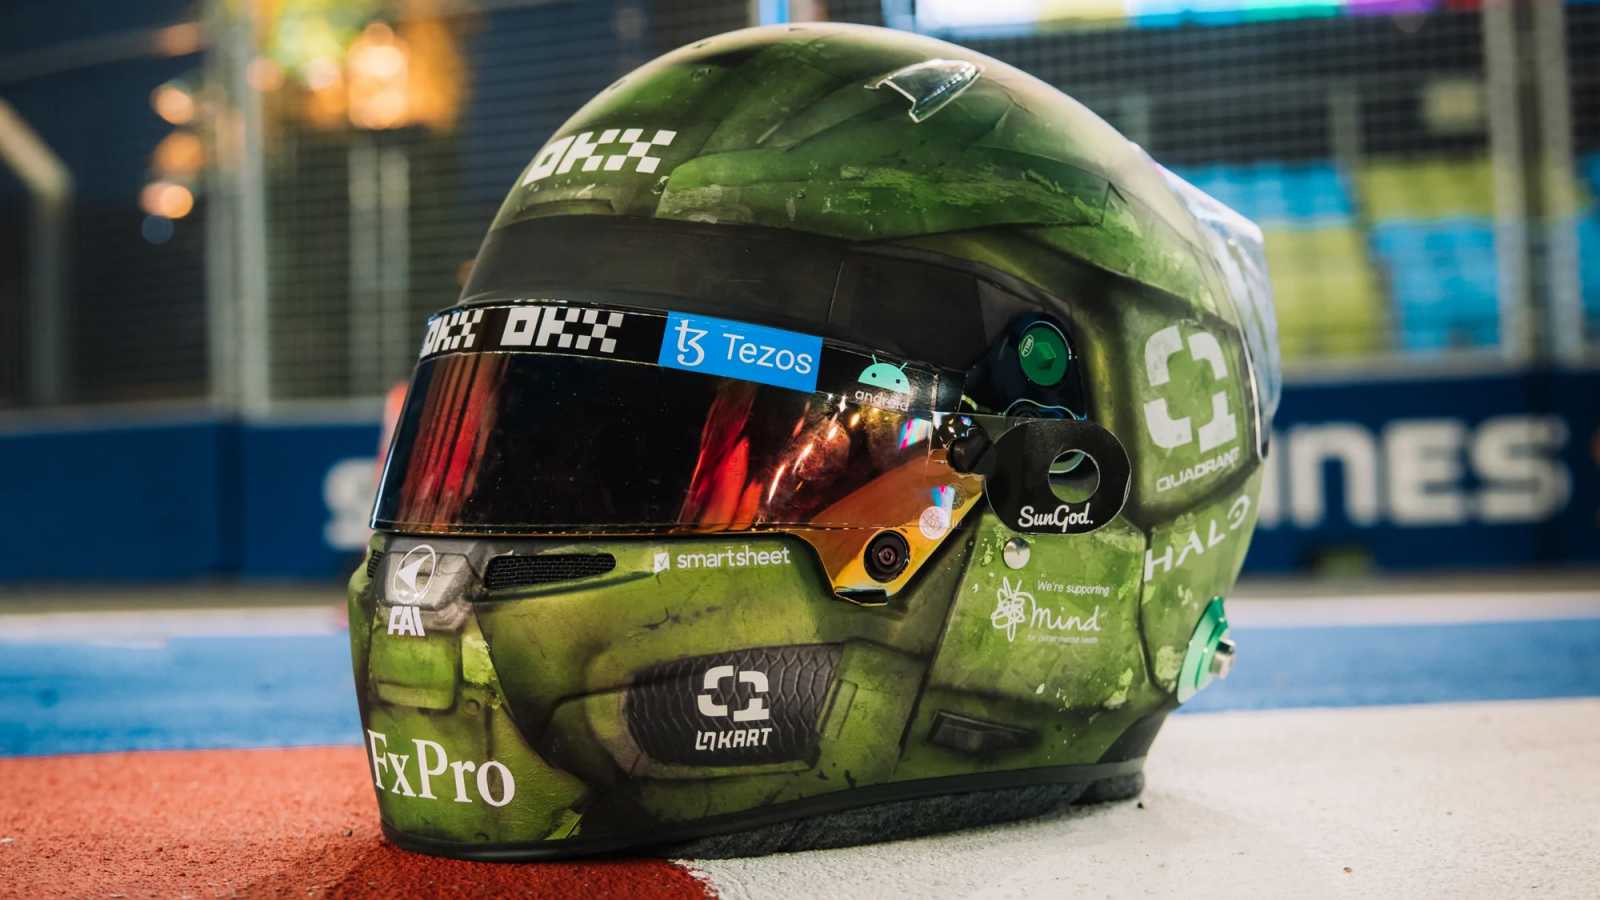 Pilot Formule 1 Lando Norris o víkendu závodí v helmě inspirované sérií Halo